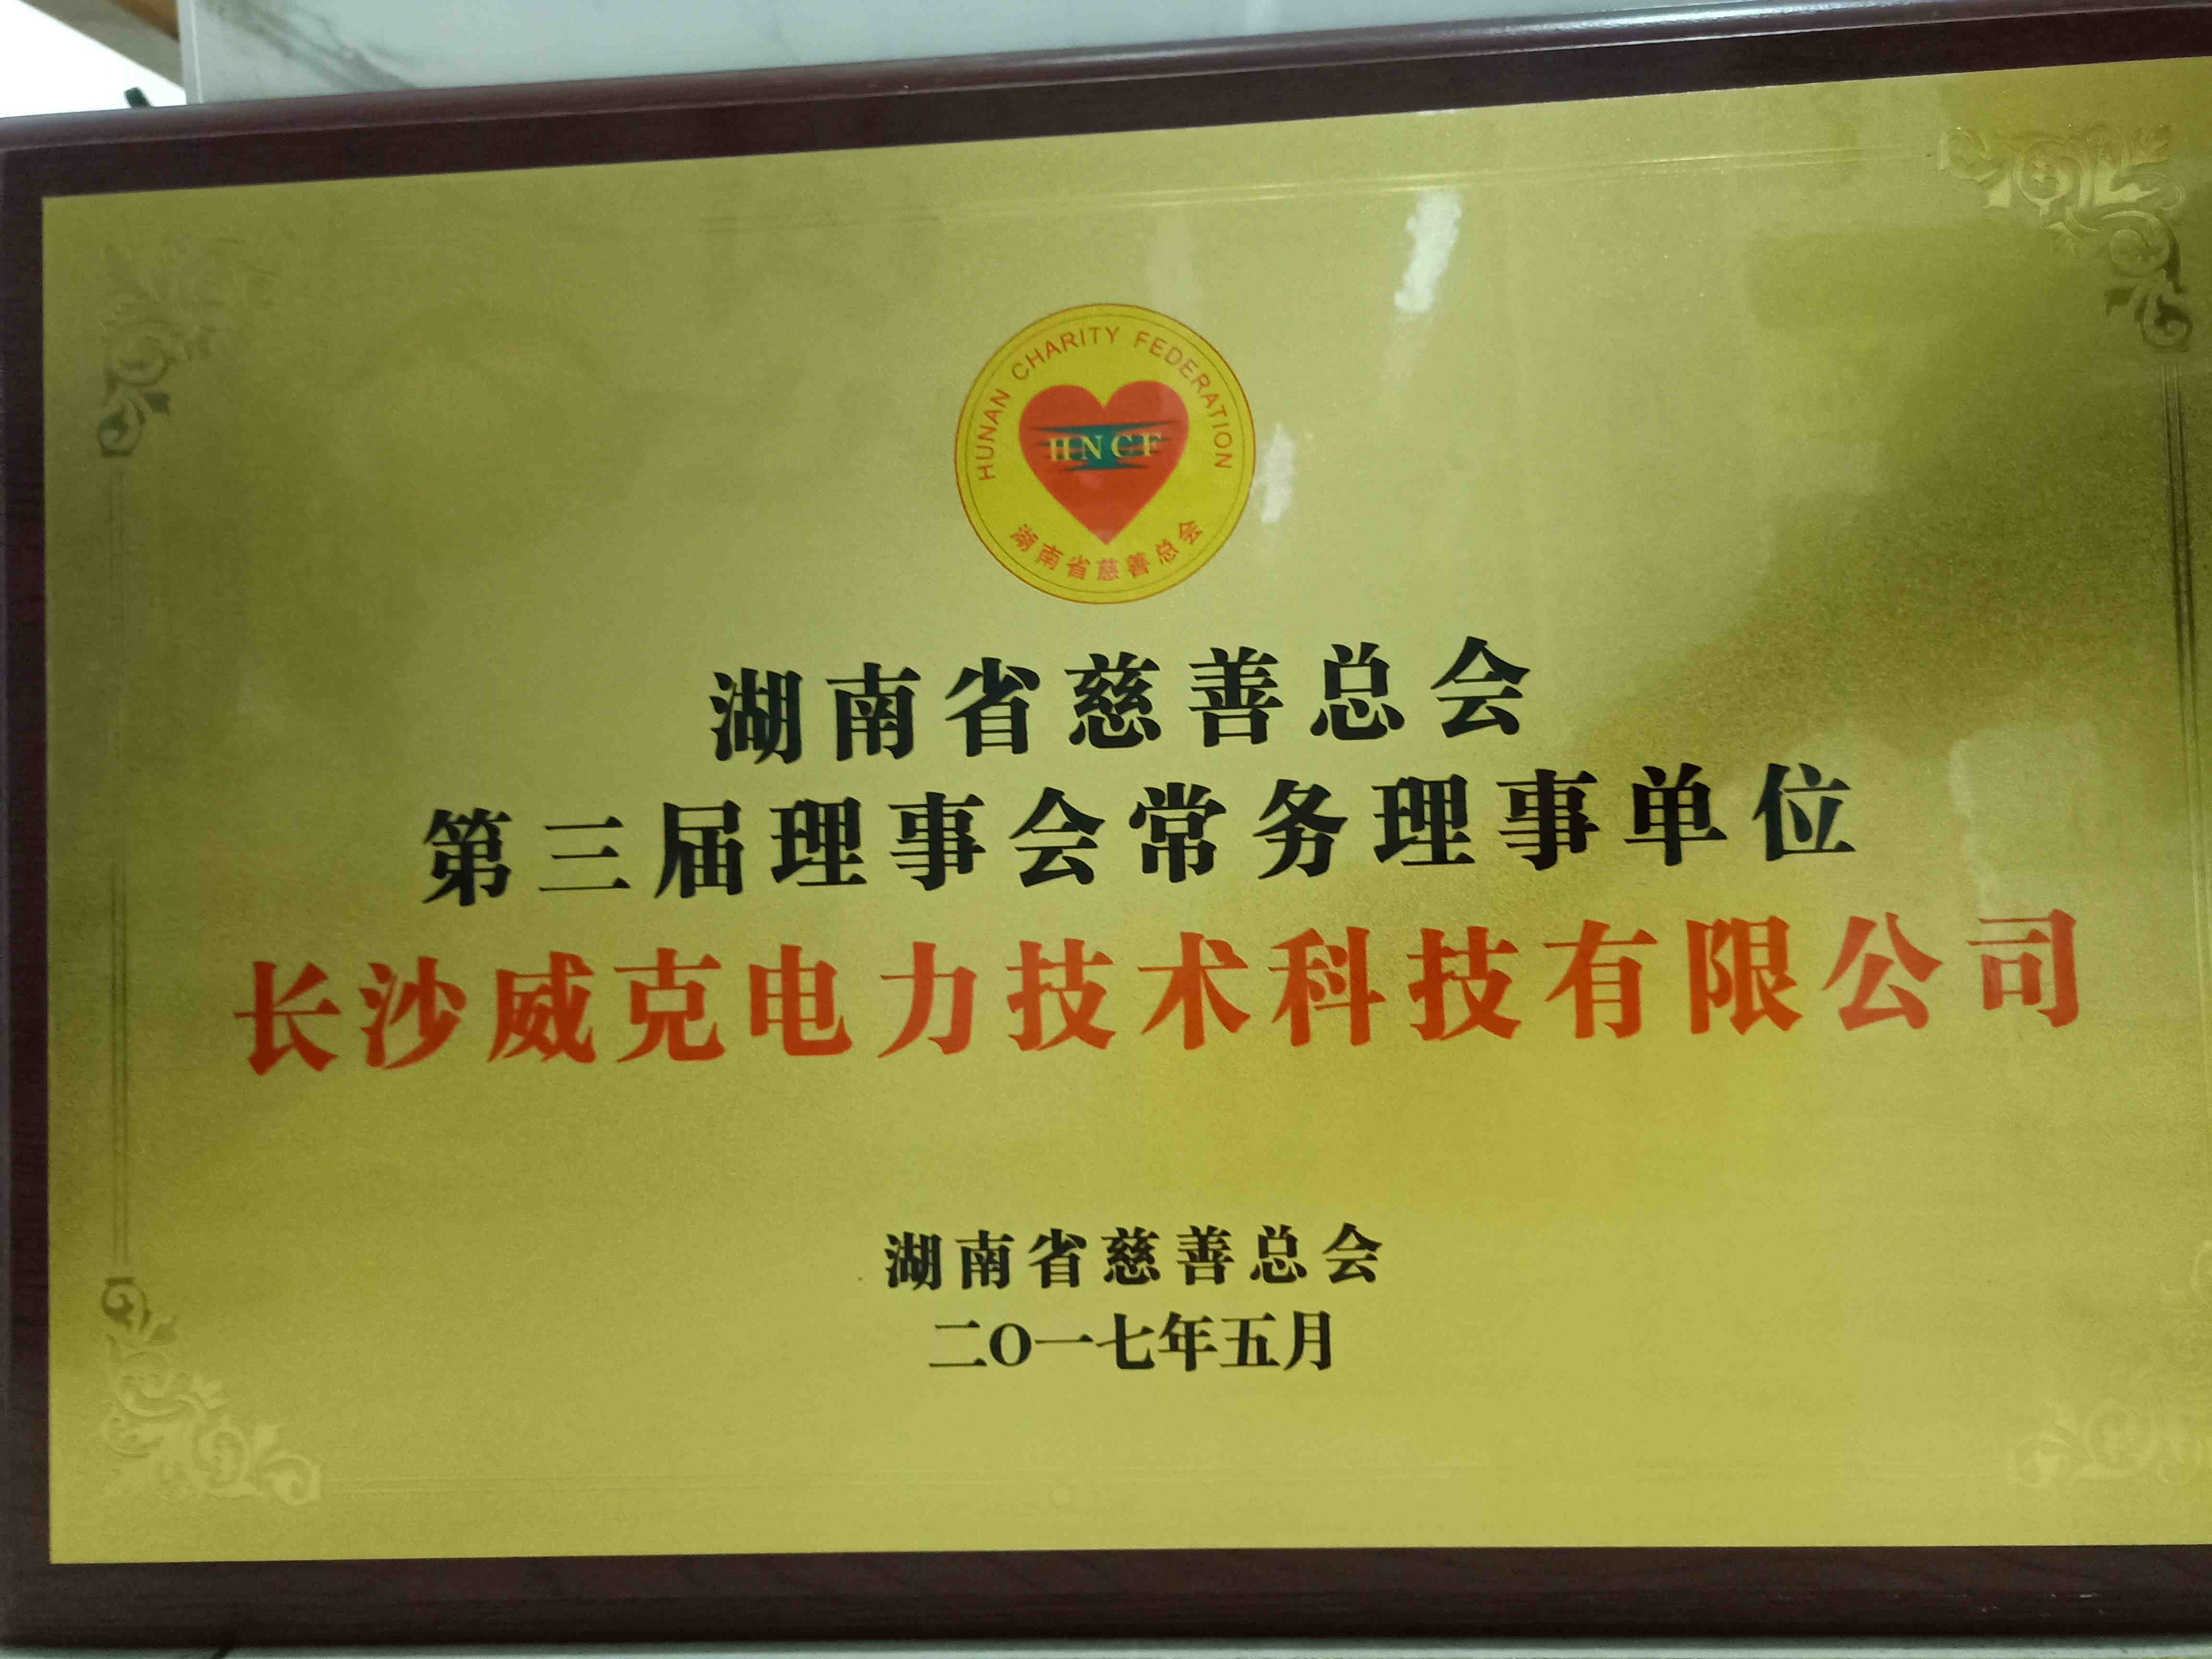 湖南省慈善總會 第三屆理事會常務理事單位